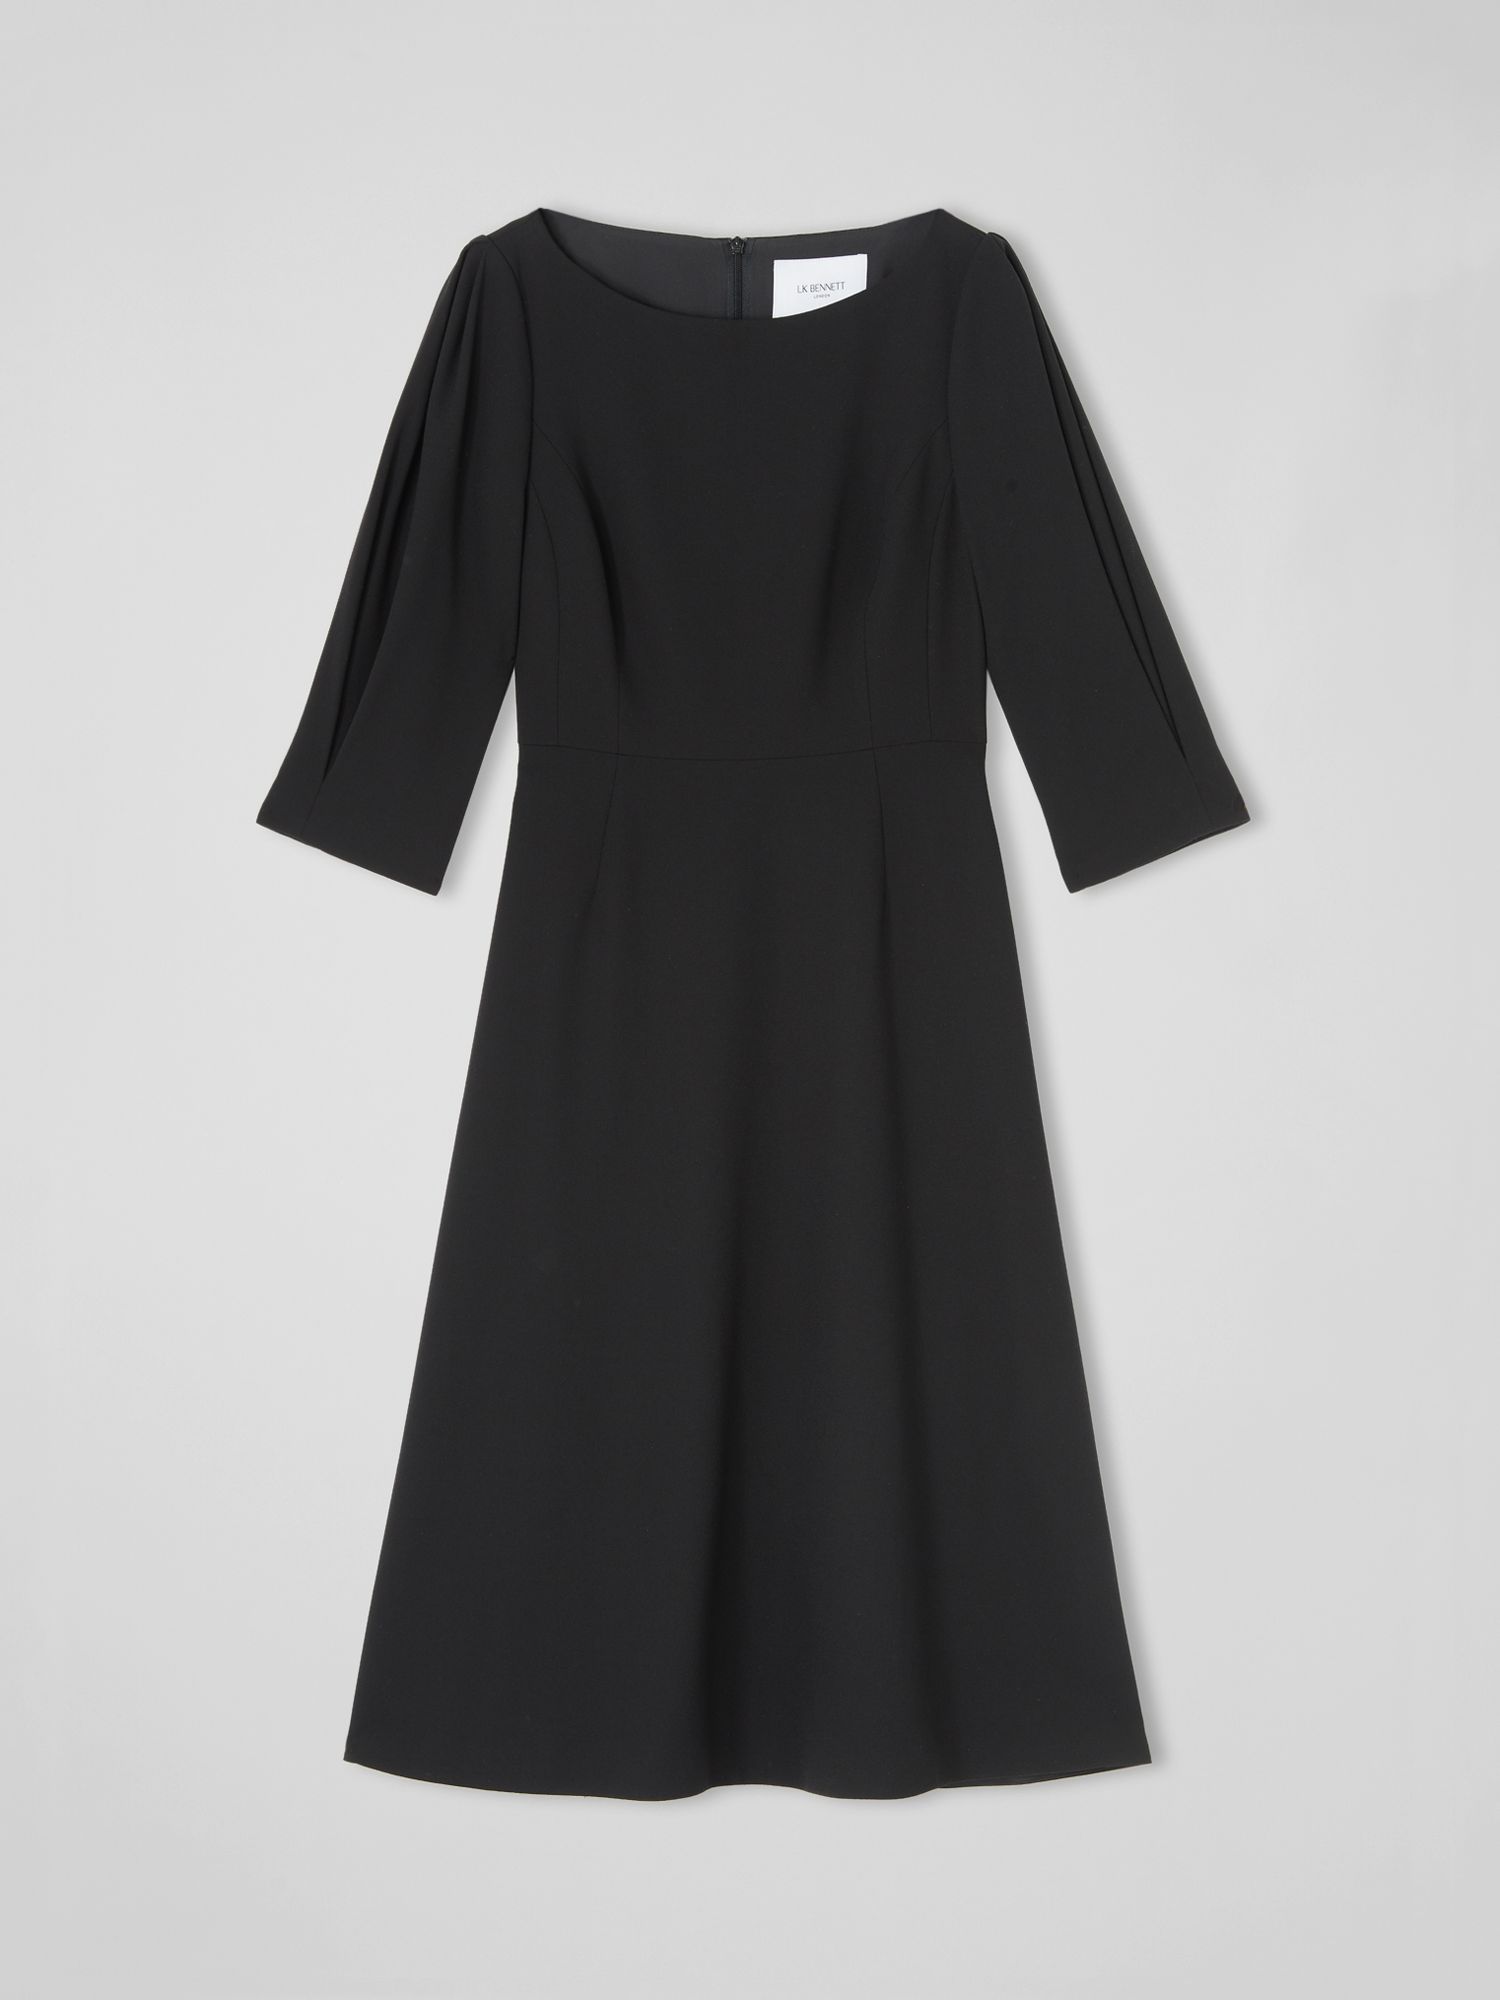 L.K.Bennett Lemoni Midi Dress, Black at John Lewis & Partners